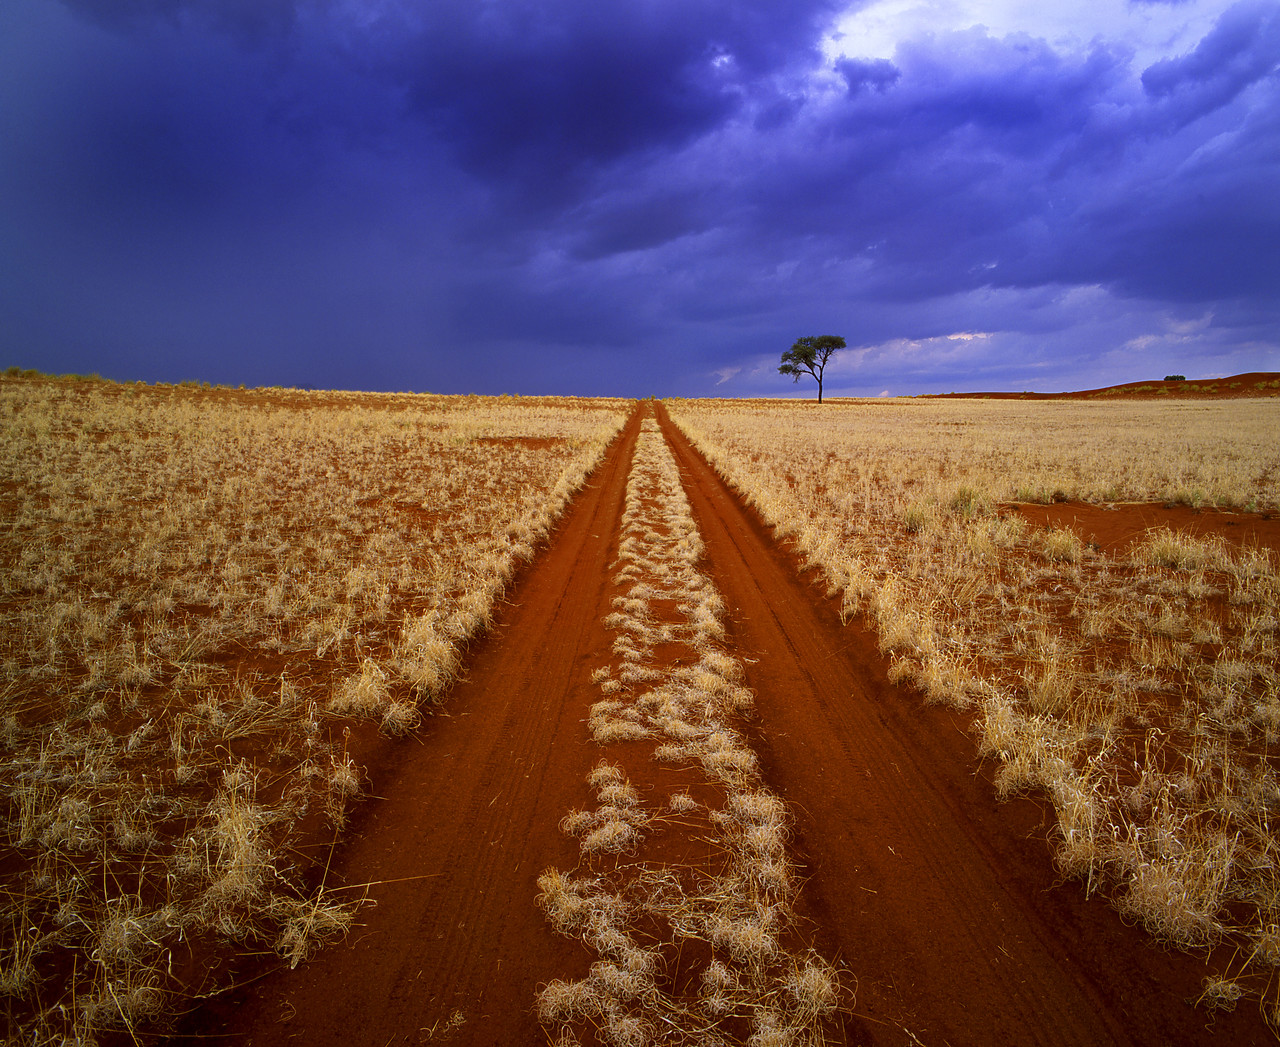 #010004-4 - Desert Track & Tree, Namibia, Africa